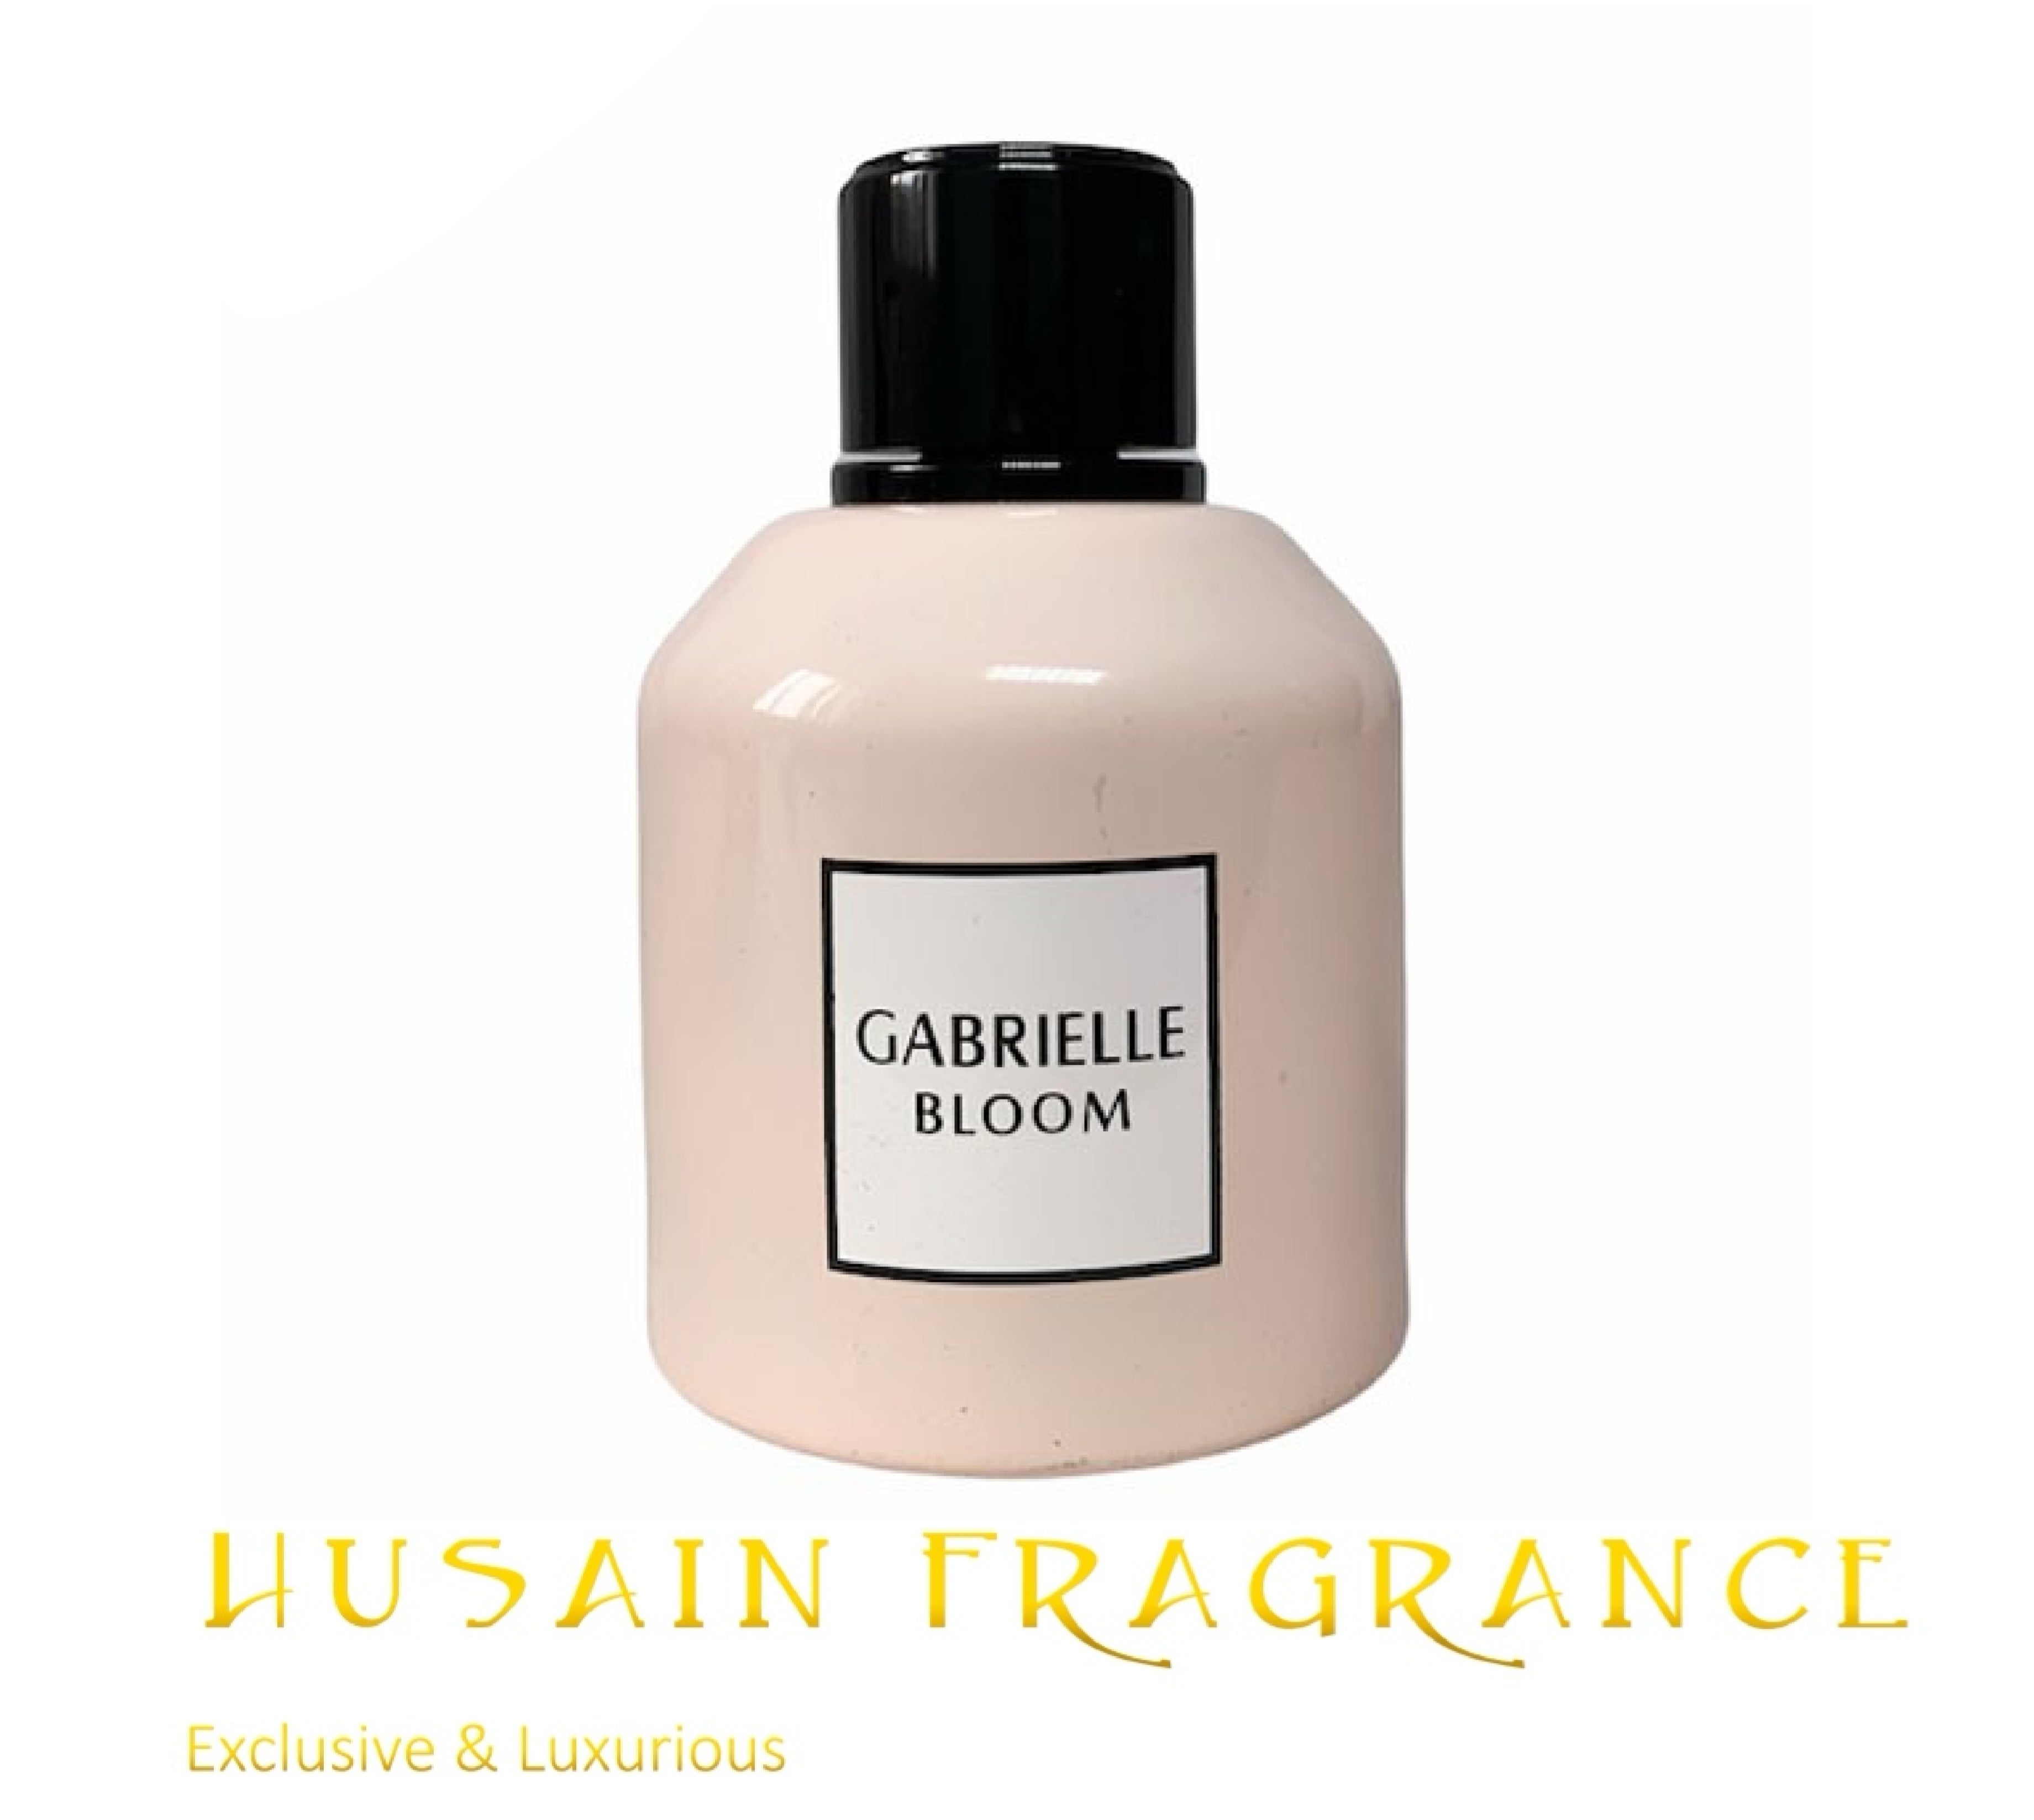 Gabrielle Bloom – Husain Fragrance